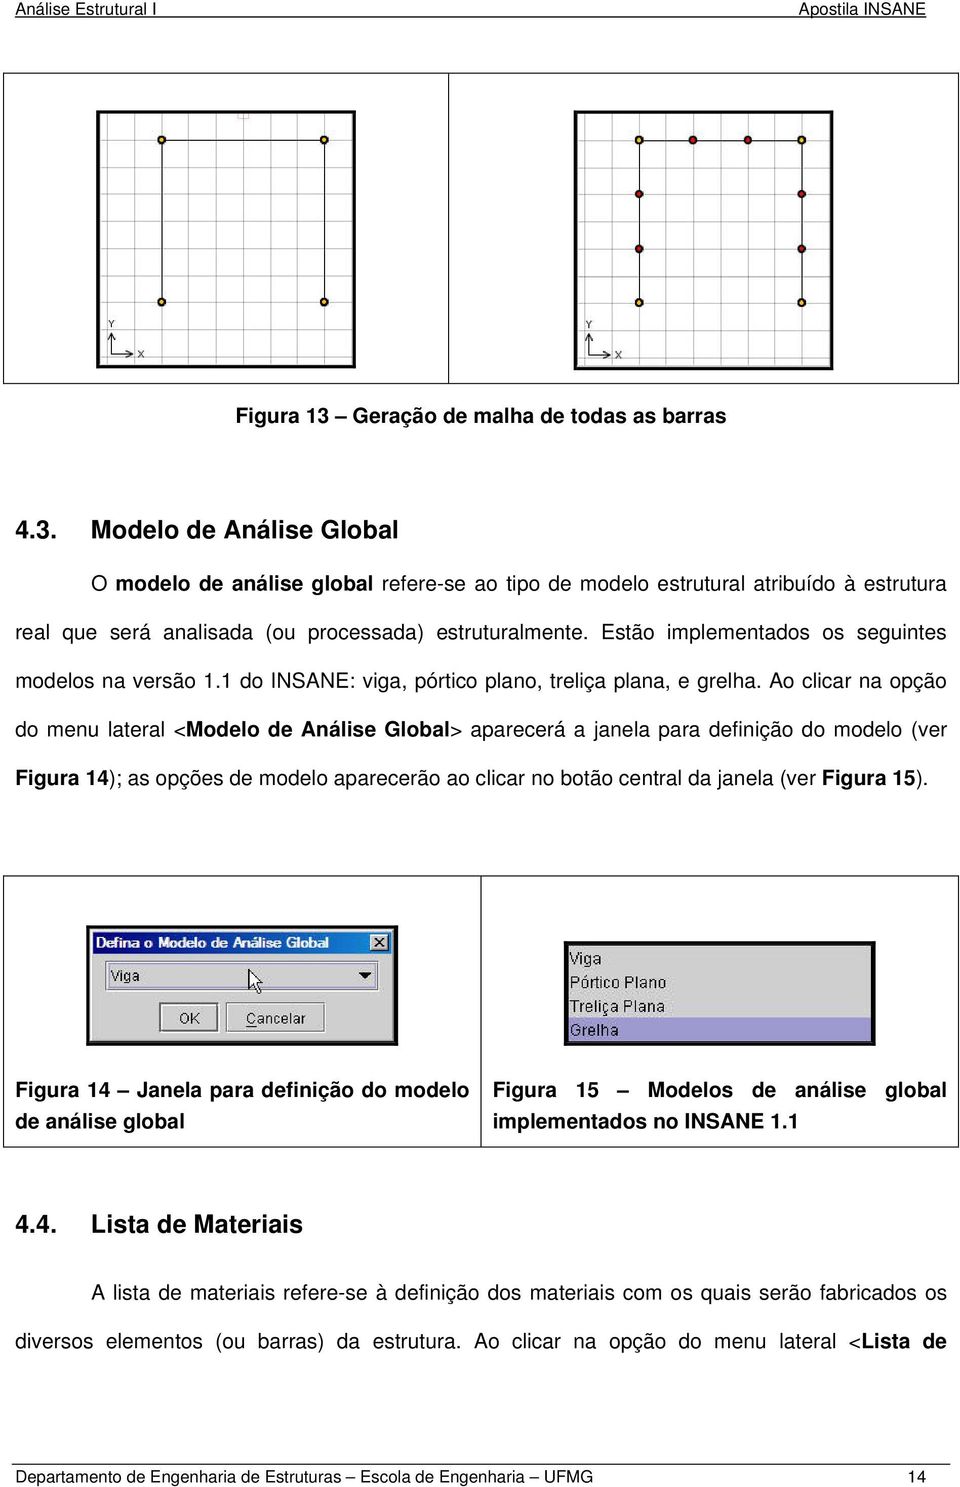 Ao clicar na opção do menu lateral <Modelo de Análise Global> aparecerá a janela para definição do modelo (ver Figura 14); as opções de modelo aparecerão ao clicar no botão central da janela (ver